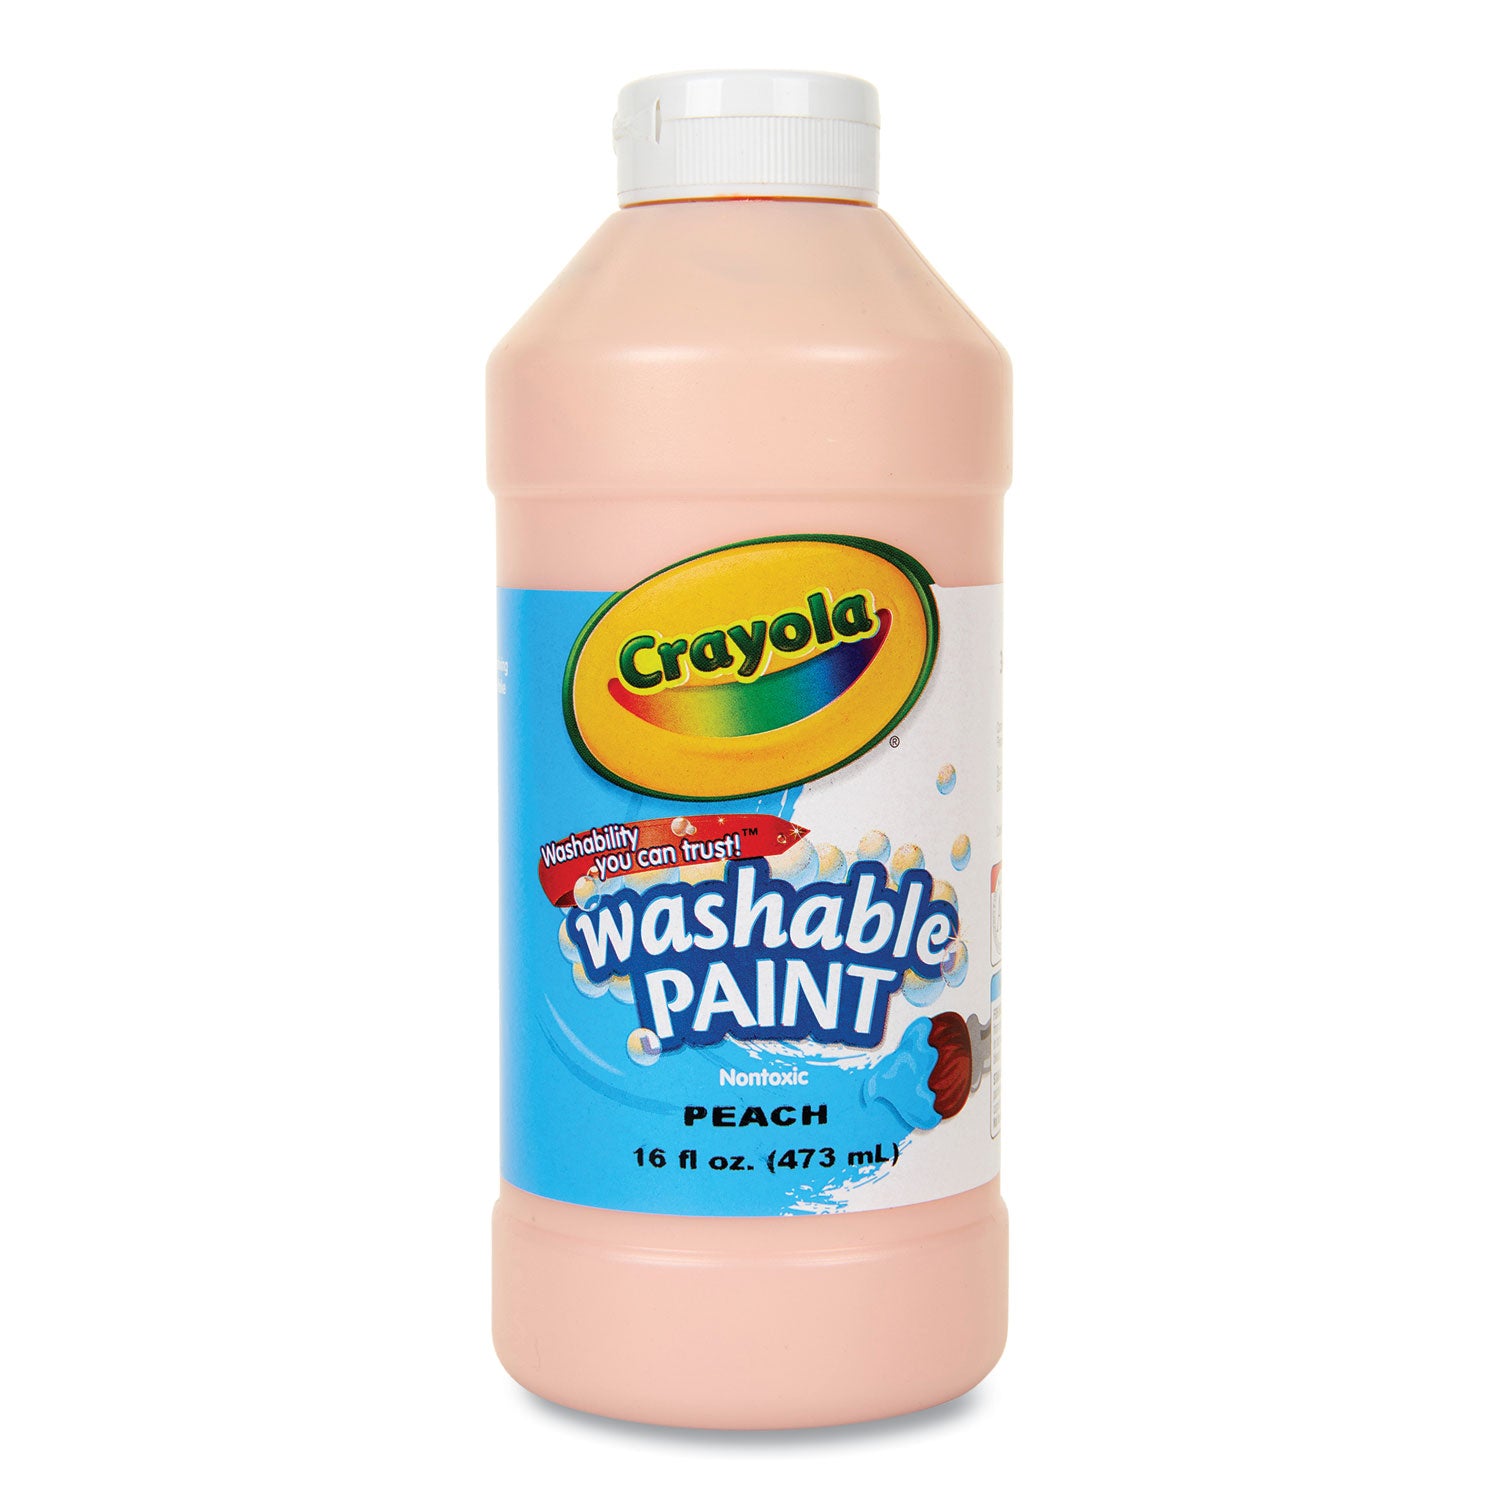 Washable Paint, Peach, 16 oz Bottle - 